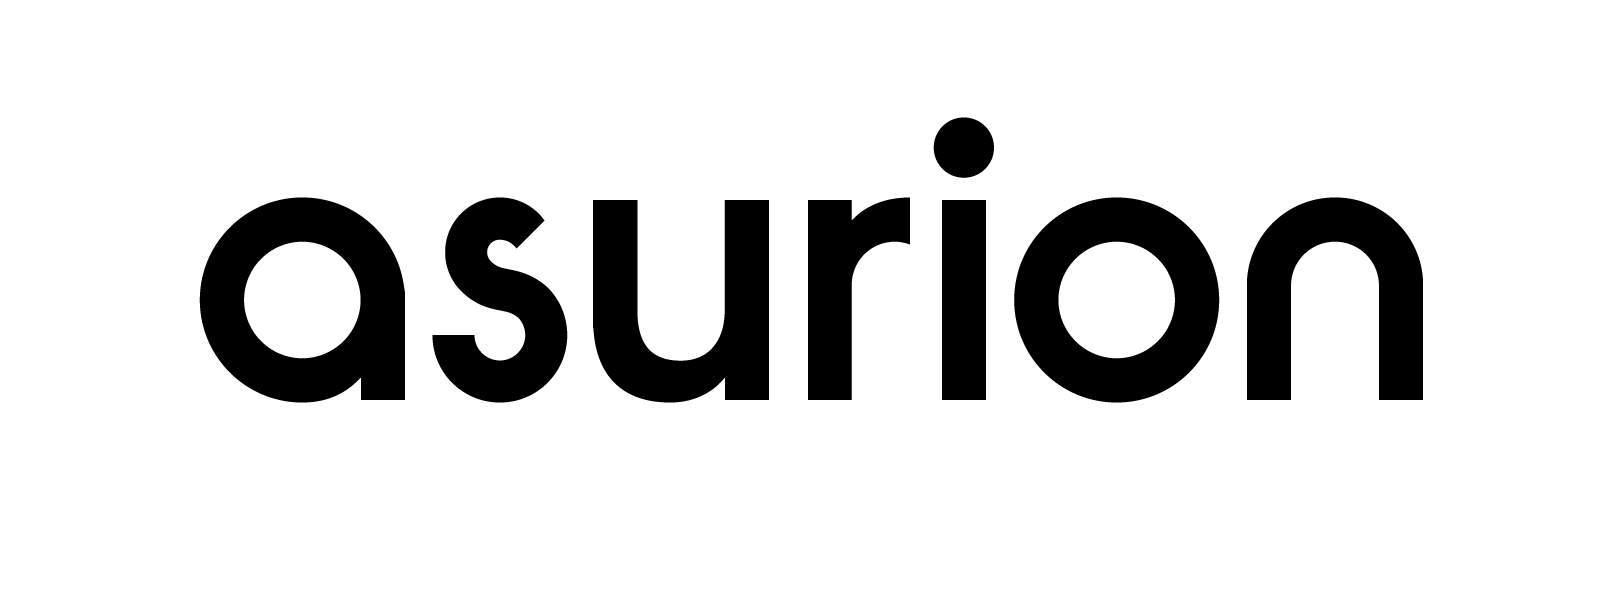 Asurion logo